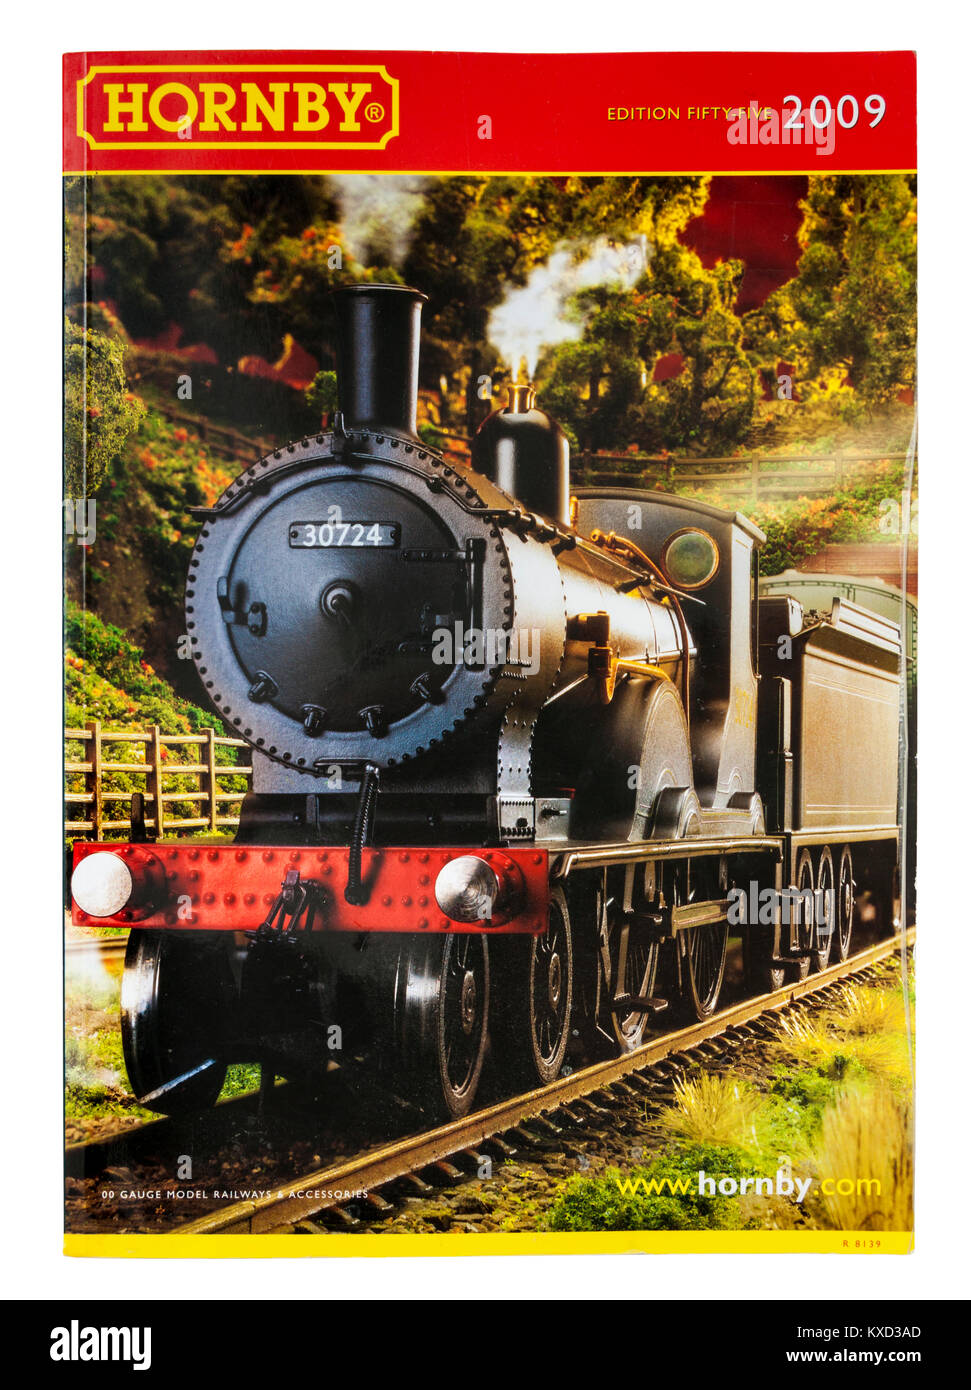 Hornby ferrovie modello catalogo da 2009 (edizione 55) con London & South Western Railway T9 4-4-0 locomotiva da 1899 da D. Drummond. Foto Stock